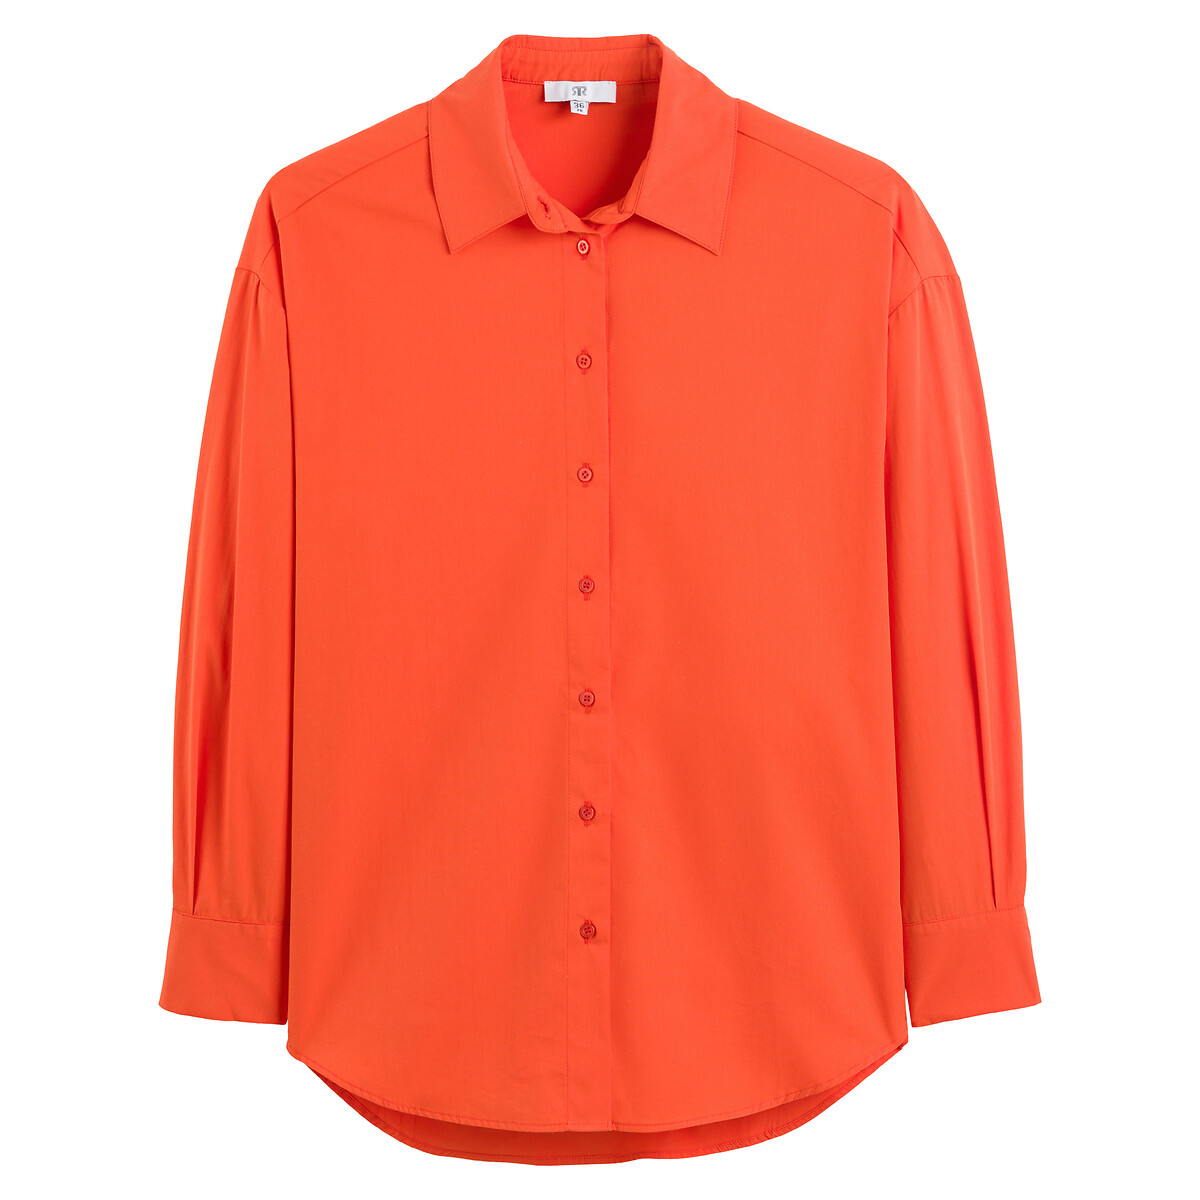 Рубашка Широкая с длинными рукавами 52 (FR) - 58 (RUS) оранжевый LaRedoute, размер 52 (FR) - 58 (RUS) Рубашка Широкая с длинными рукавами 52 (FR) - 58 (RUS) оранжевый - фото 5